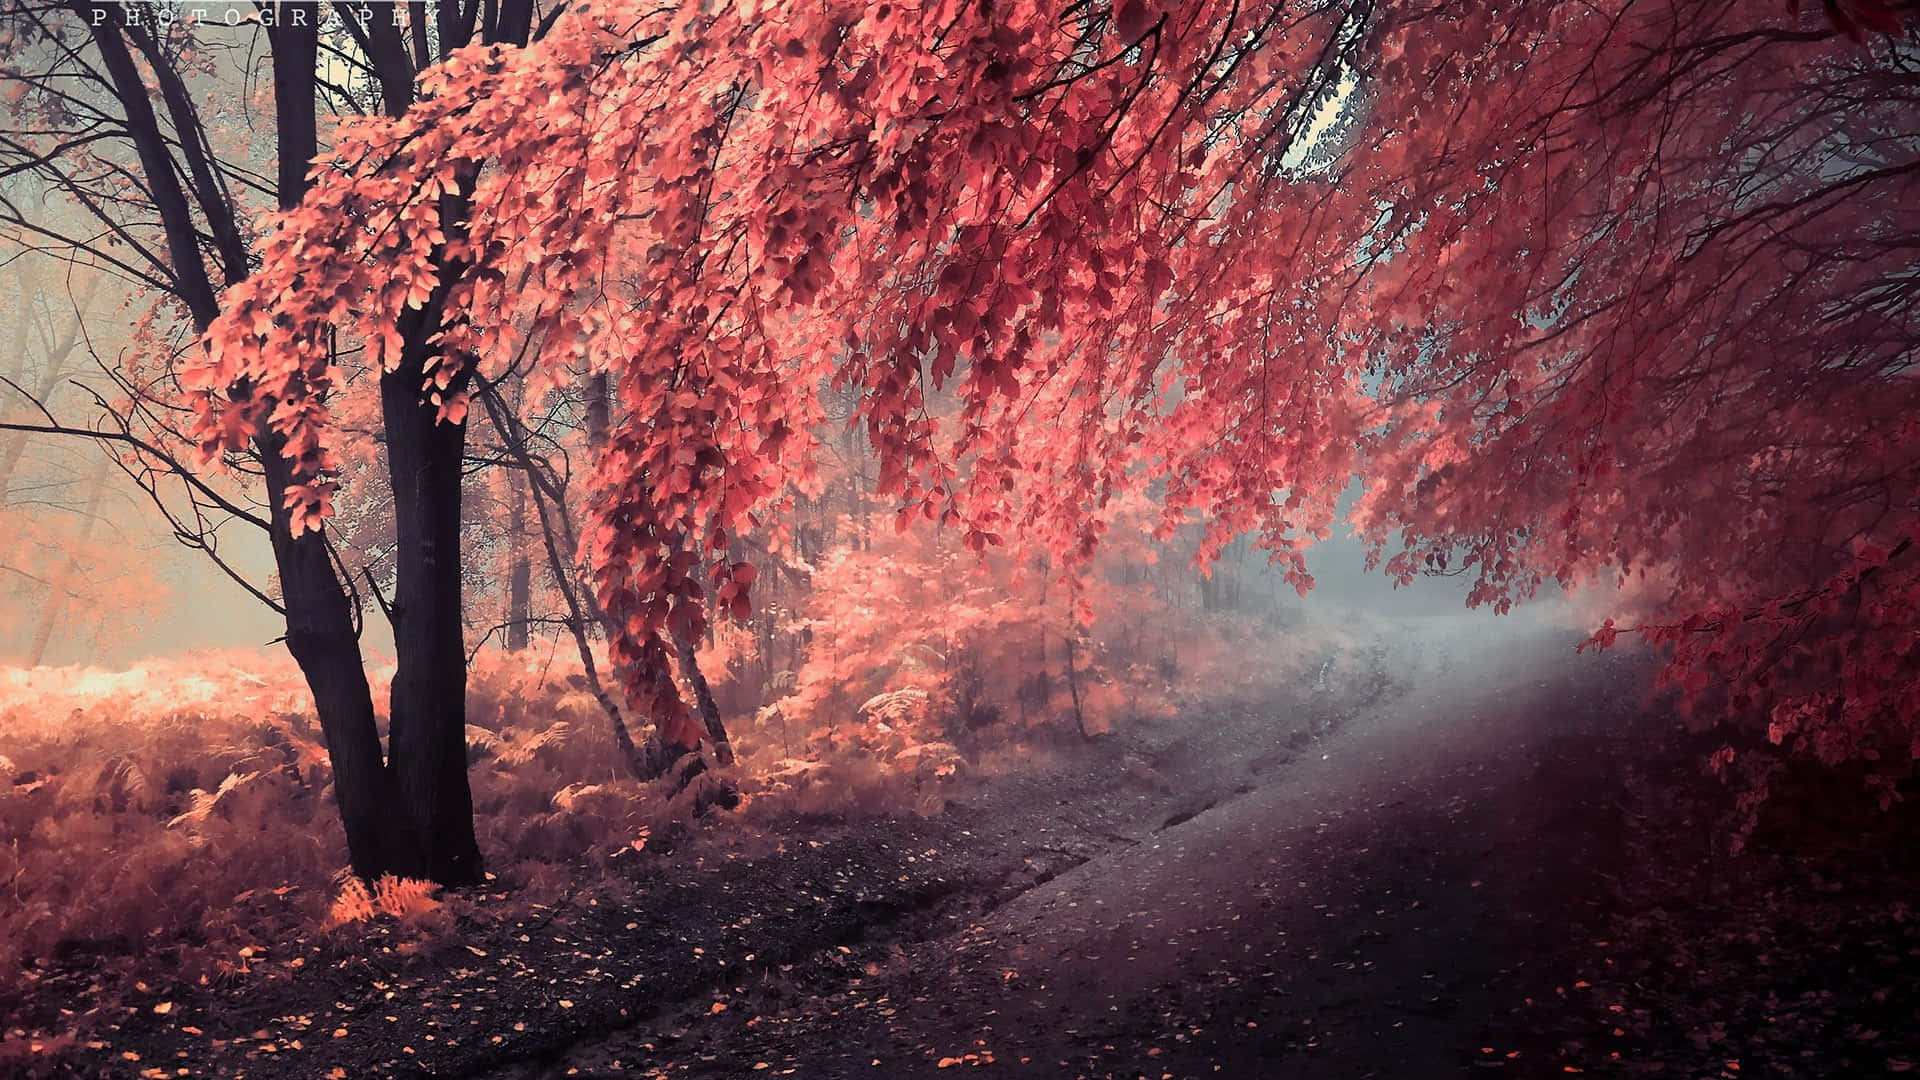 Tauchensie Ein In Den Geist Des Herbstes Mit Diesem Atemberaubenden Herbst-hintergrundbild Für Ihren Desktop.